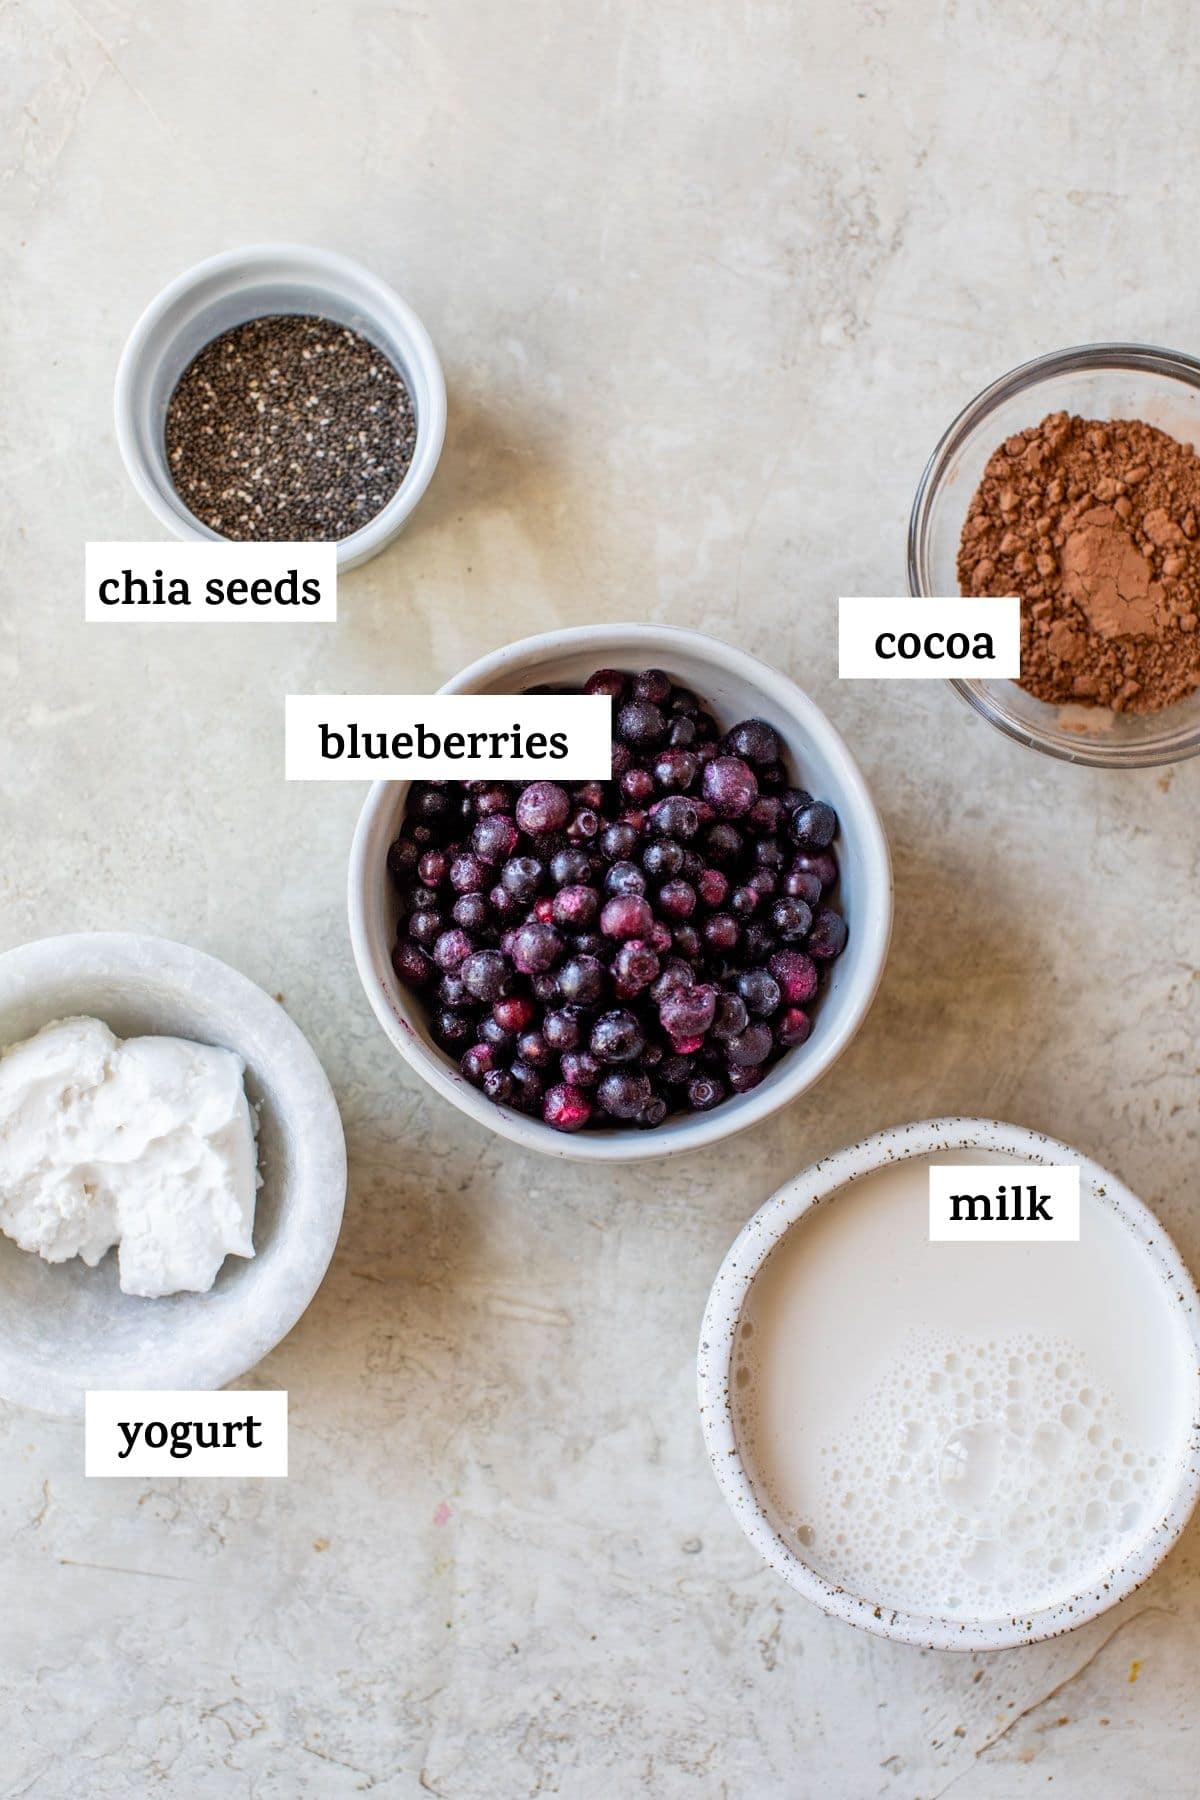 ingrédients nécessaires pour faire un smoothie, comme des bleuets congelés et de la poudre de cacao